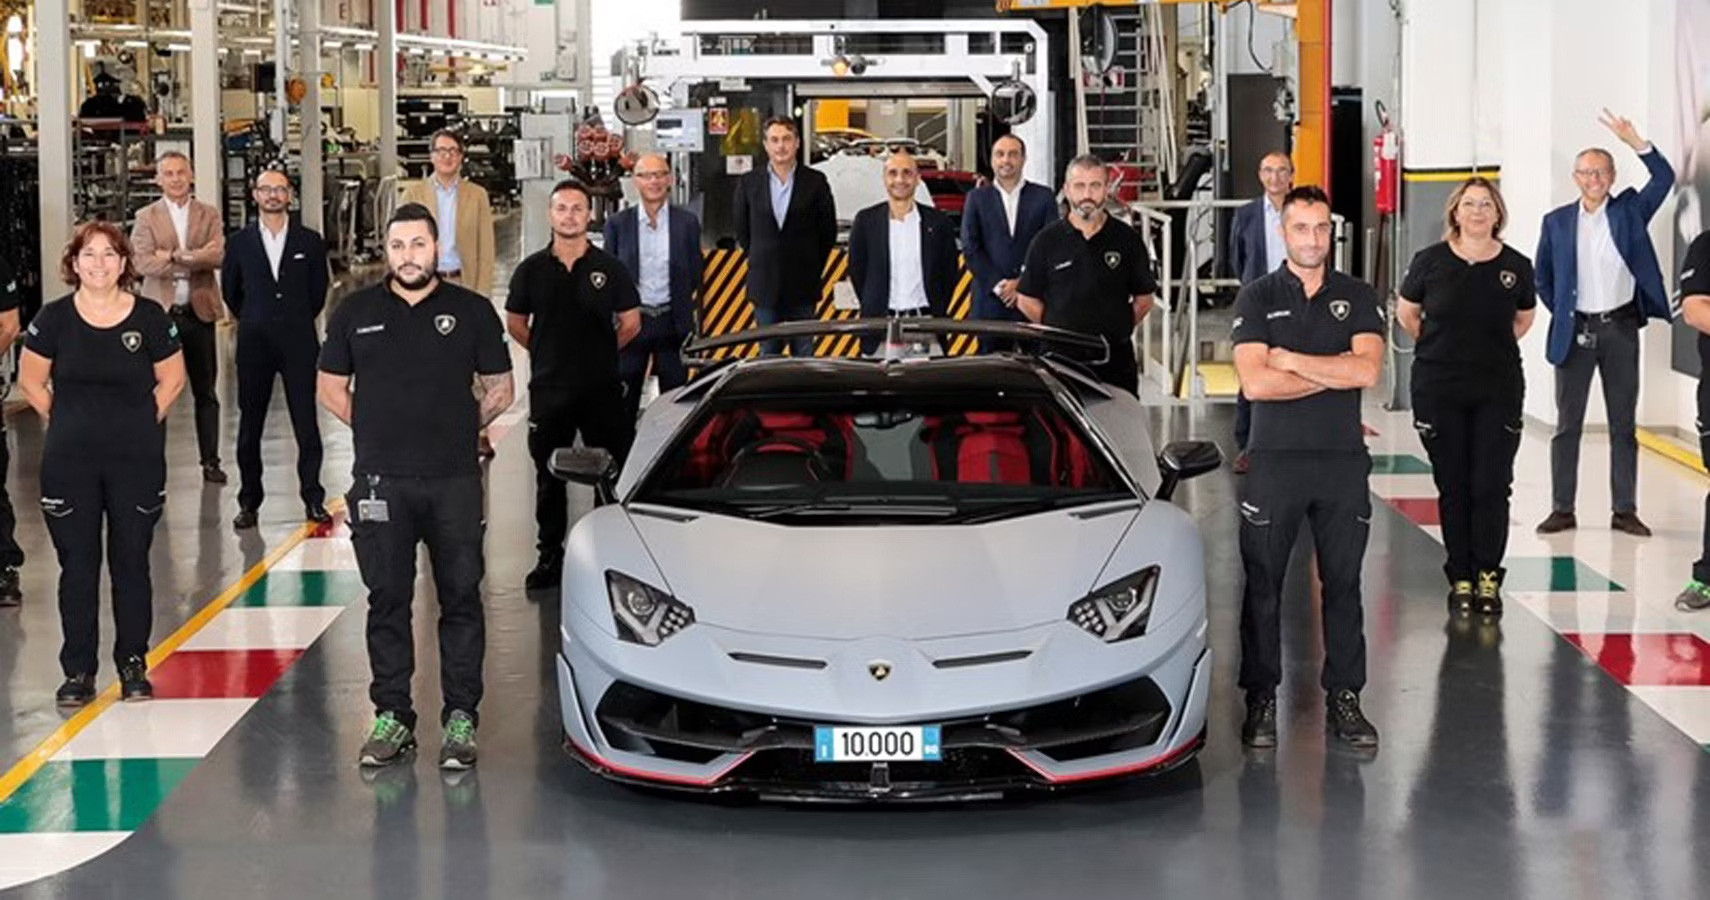 Theo quy định mới, công nhân Lamborghini có thêm 1 tháng nghỉ ngơi (tính tổng số ngày làm việc được cắt giảm) so với trước kia - Ảnh: Lamborghini